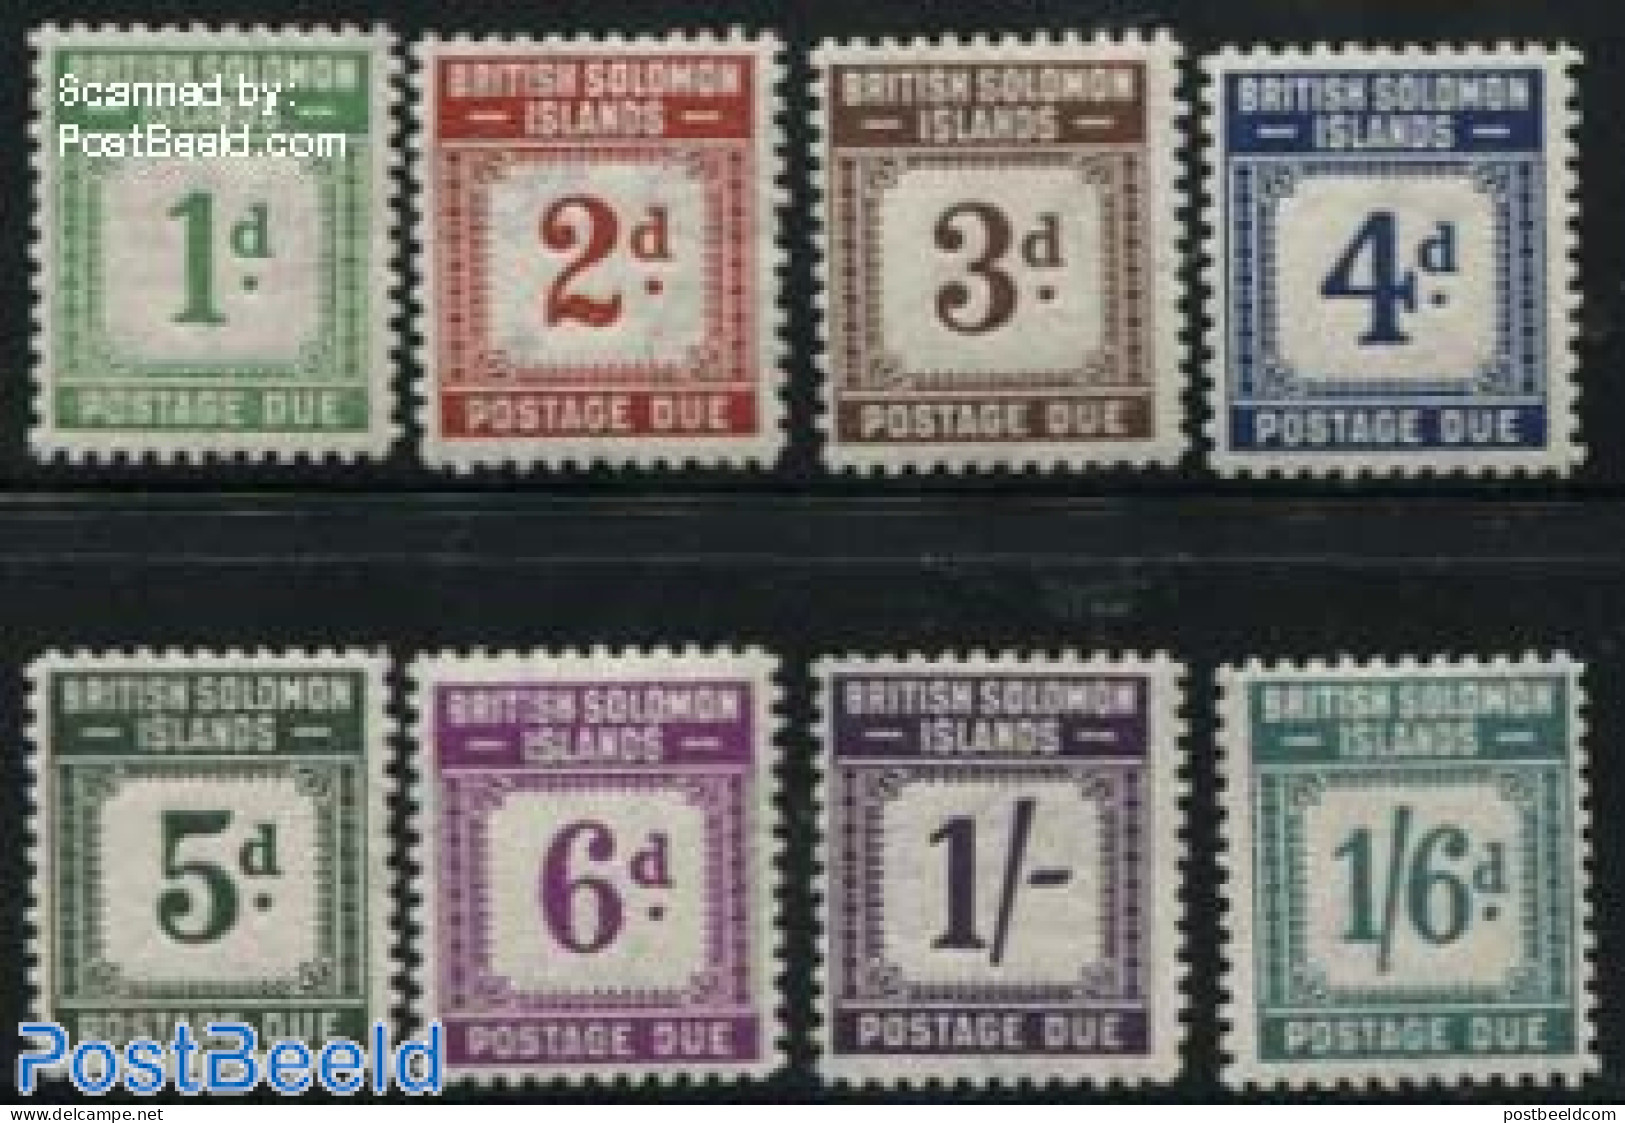 Solomon Islands 1940 Postage Due 8v, Unused (hinged) - Salomon (Iles 1978-...)